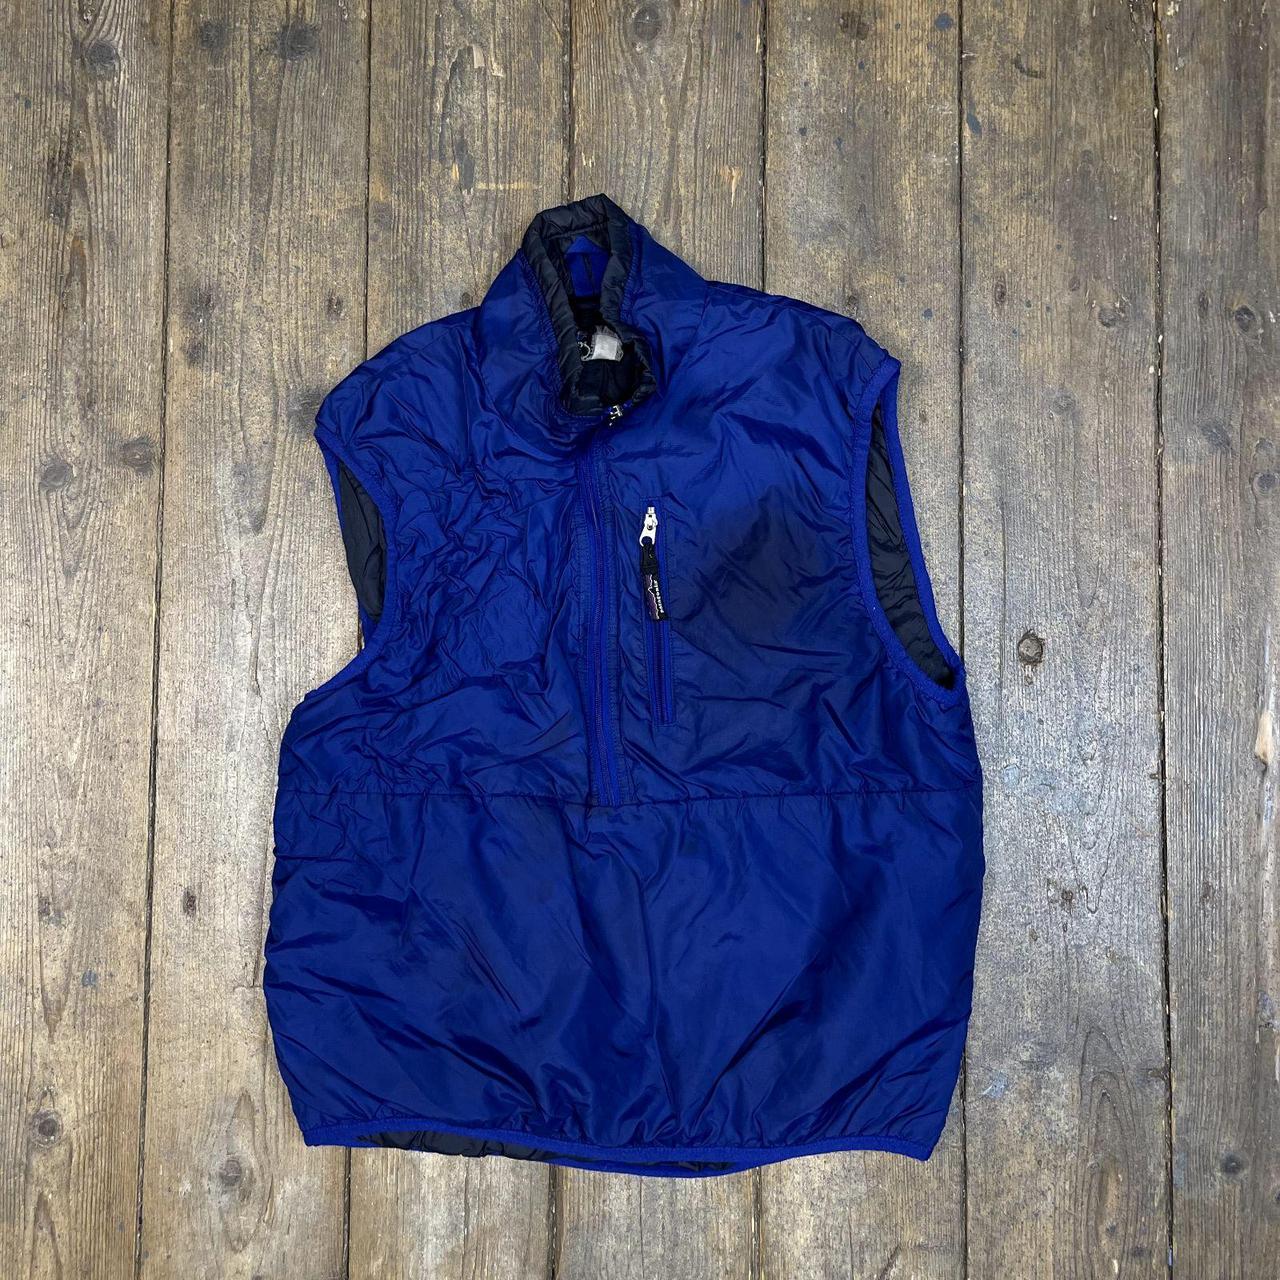 Patagonia Gilet Jacket Vintage Half-Zip Sleeveless... - Depop